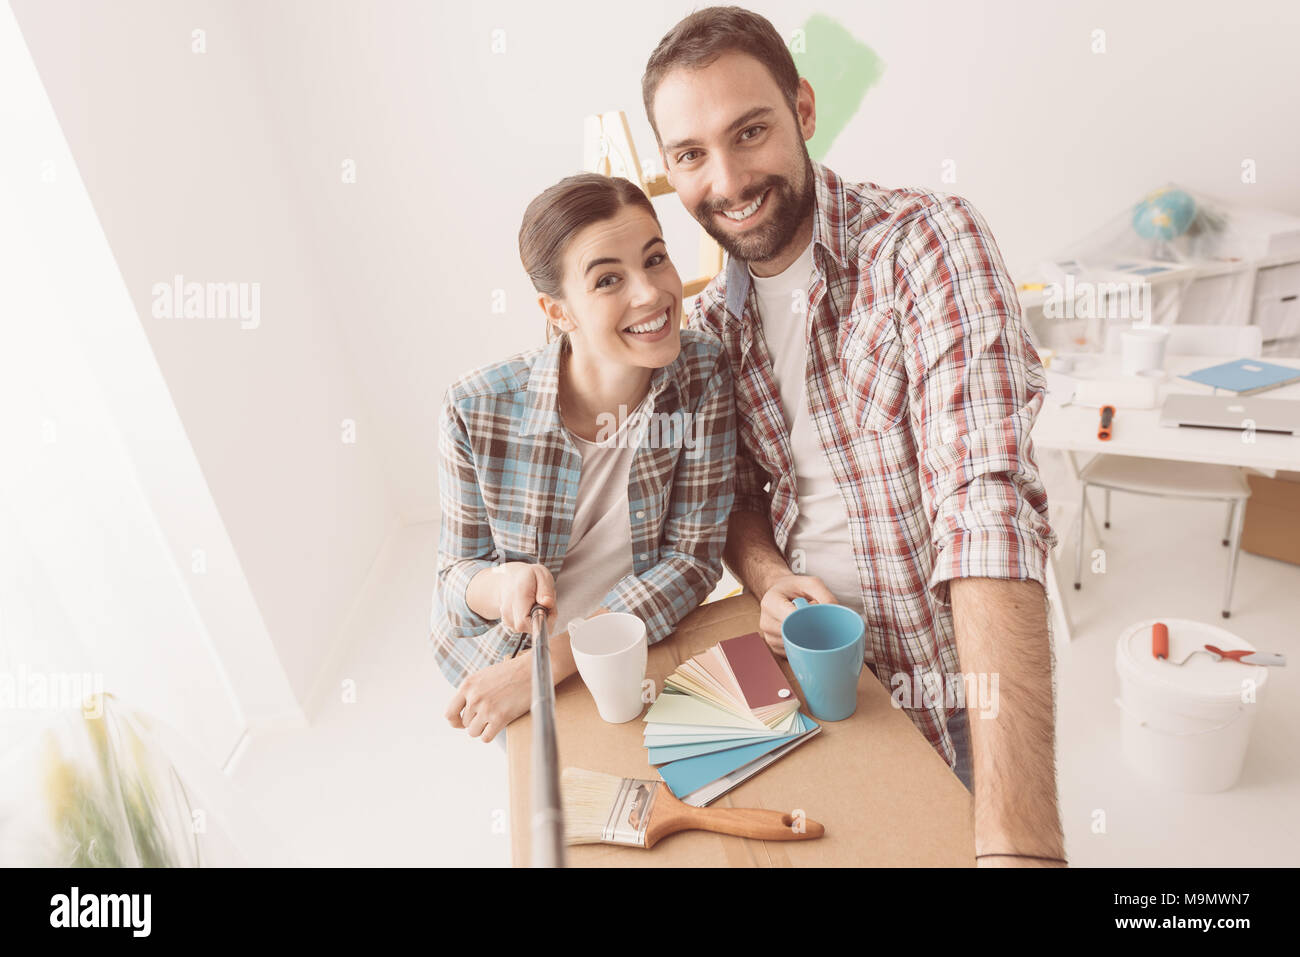 Lächelnd junges Paar Einzug in ihr neues Haus und eine Haus Makeover zu tun, nehmen sie ein Selbstporträt Stockfoto